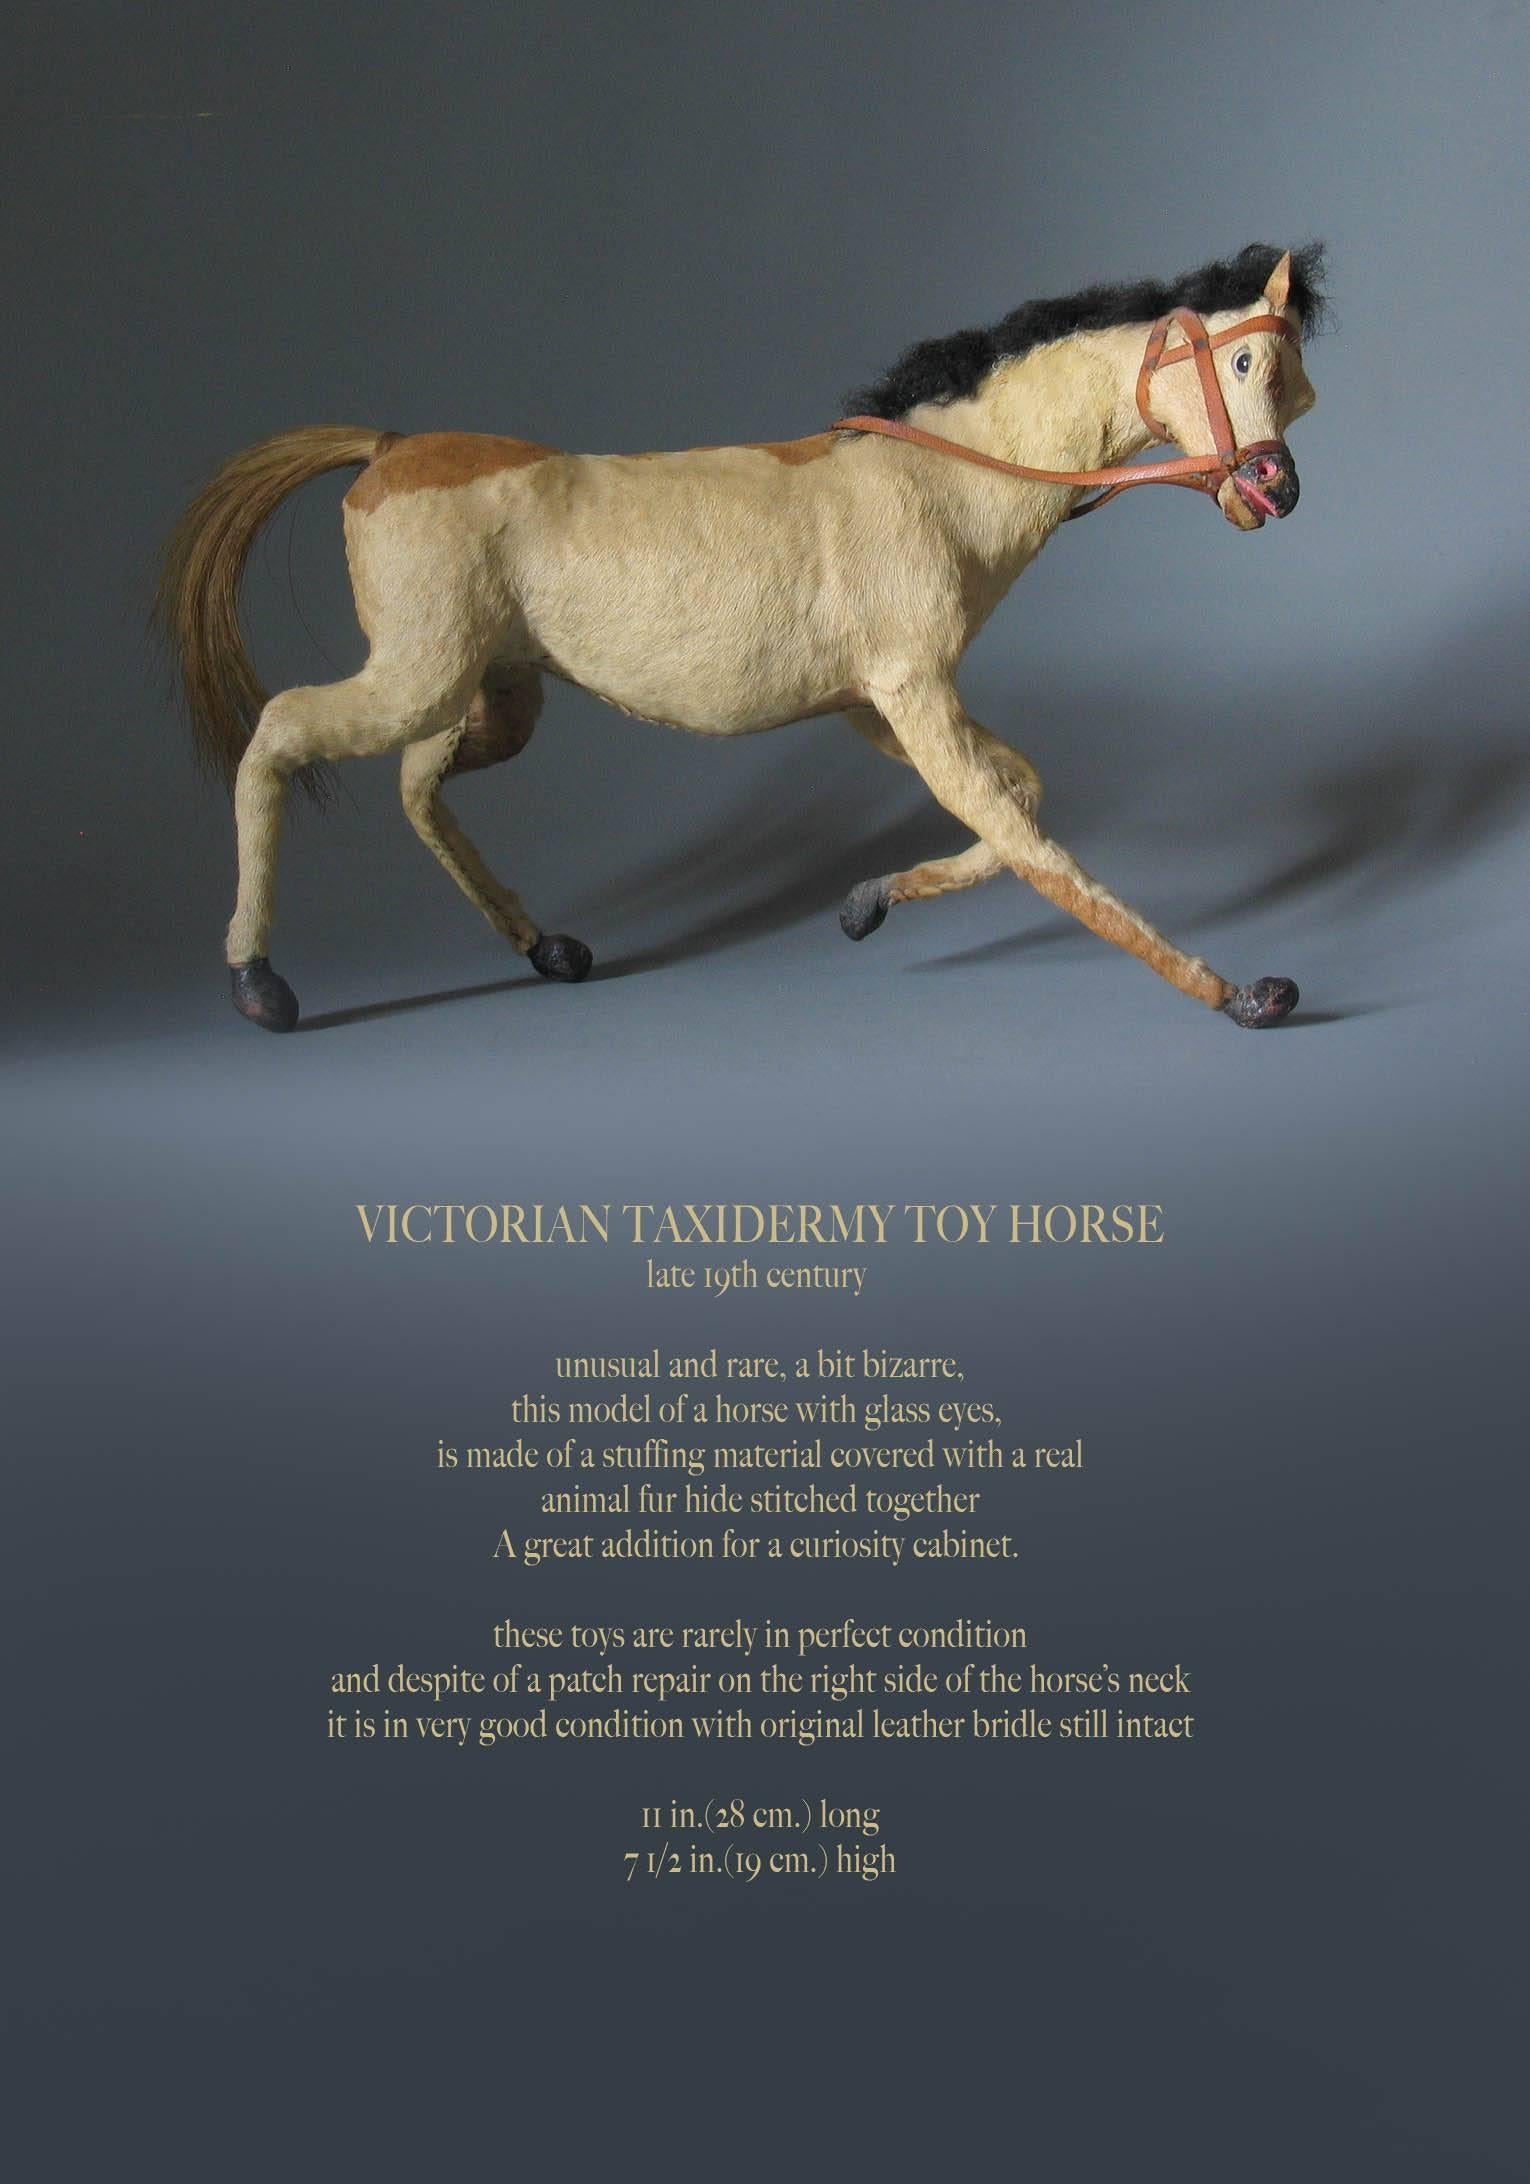 Cheval-jouet victorien en taxidermie, fin du XIXe siècle.

Inhabituel et rare, un peu bizarre, ce modèle de cheval avec des yeux de verre, est fait d'un matériau de rembourrage recouvert d'une véritable peau de fourrure d'animal cousue ensemble,